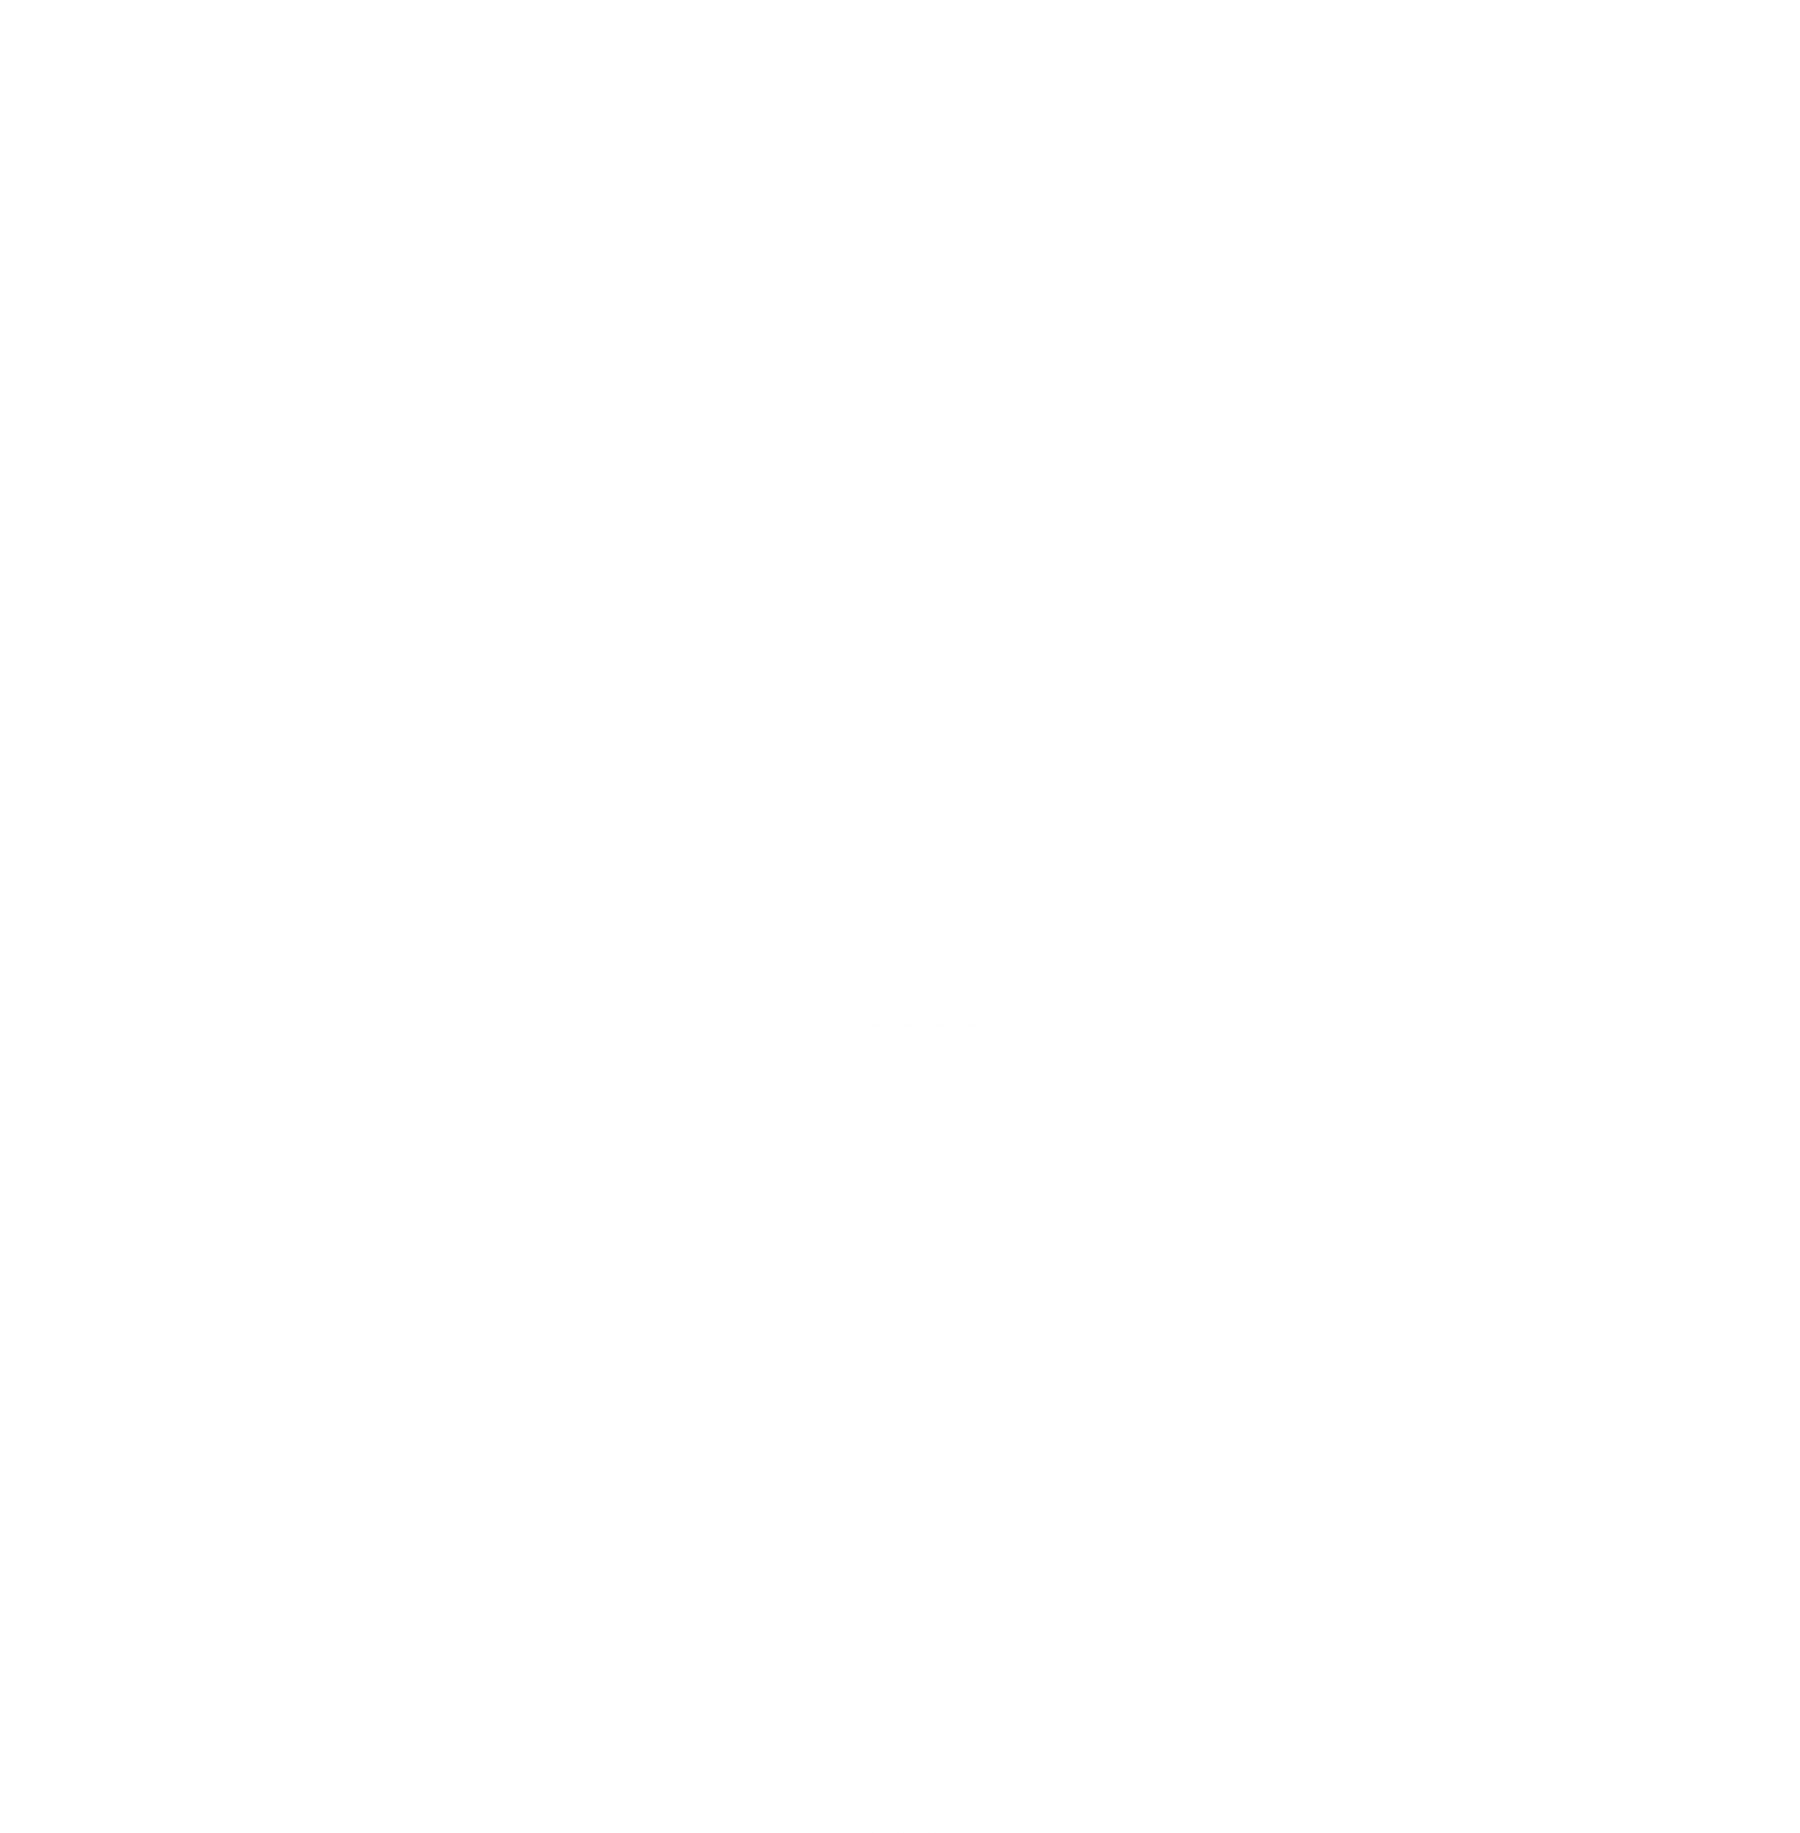 bonner springs elementary school logo